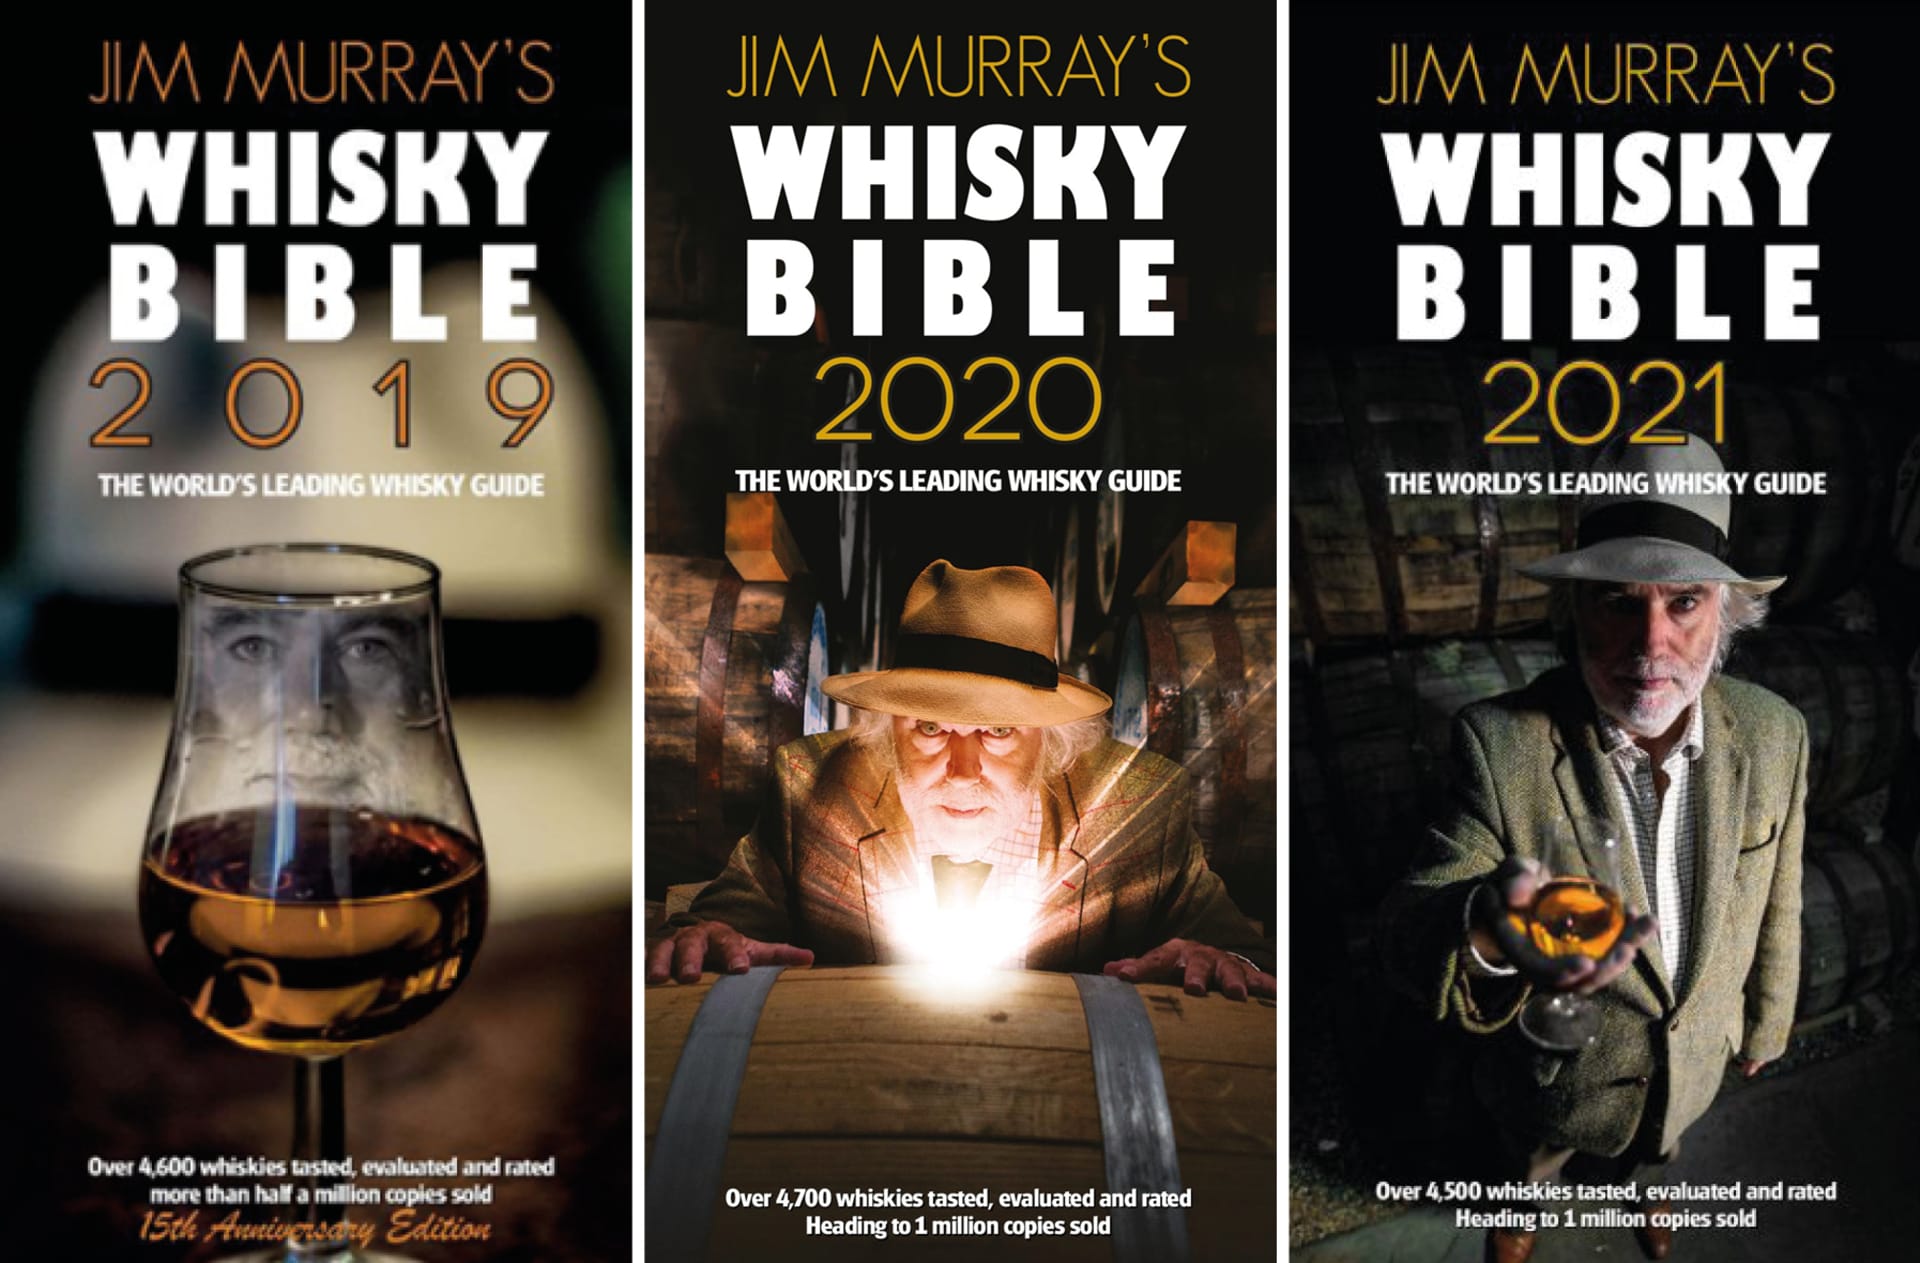 Jim Murray's Whisky Bible oslavila už sedmnácté výročí a podle údajů vydavatele se dosud celkově prodalo přes milion výtisků.